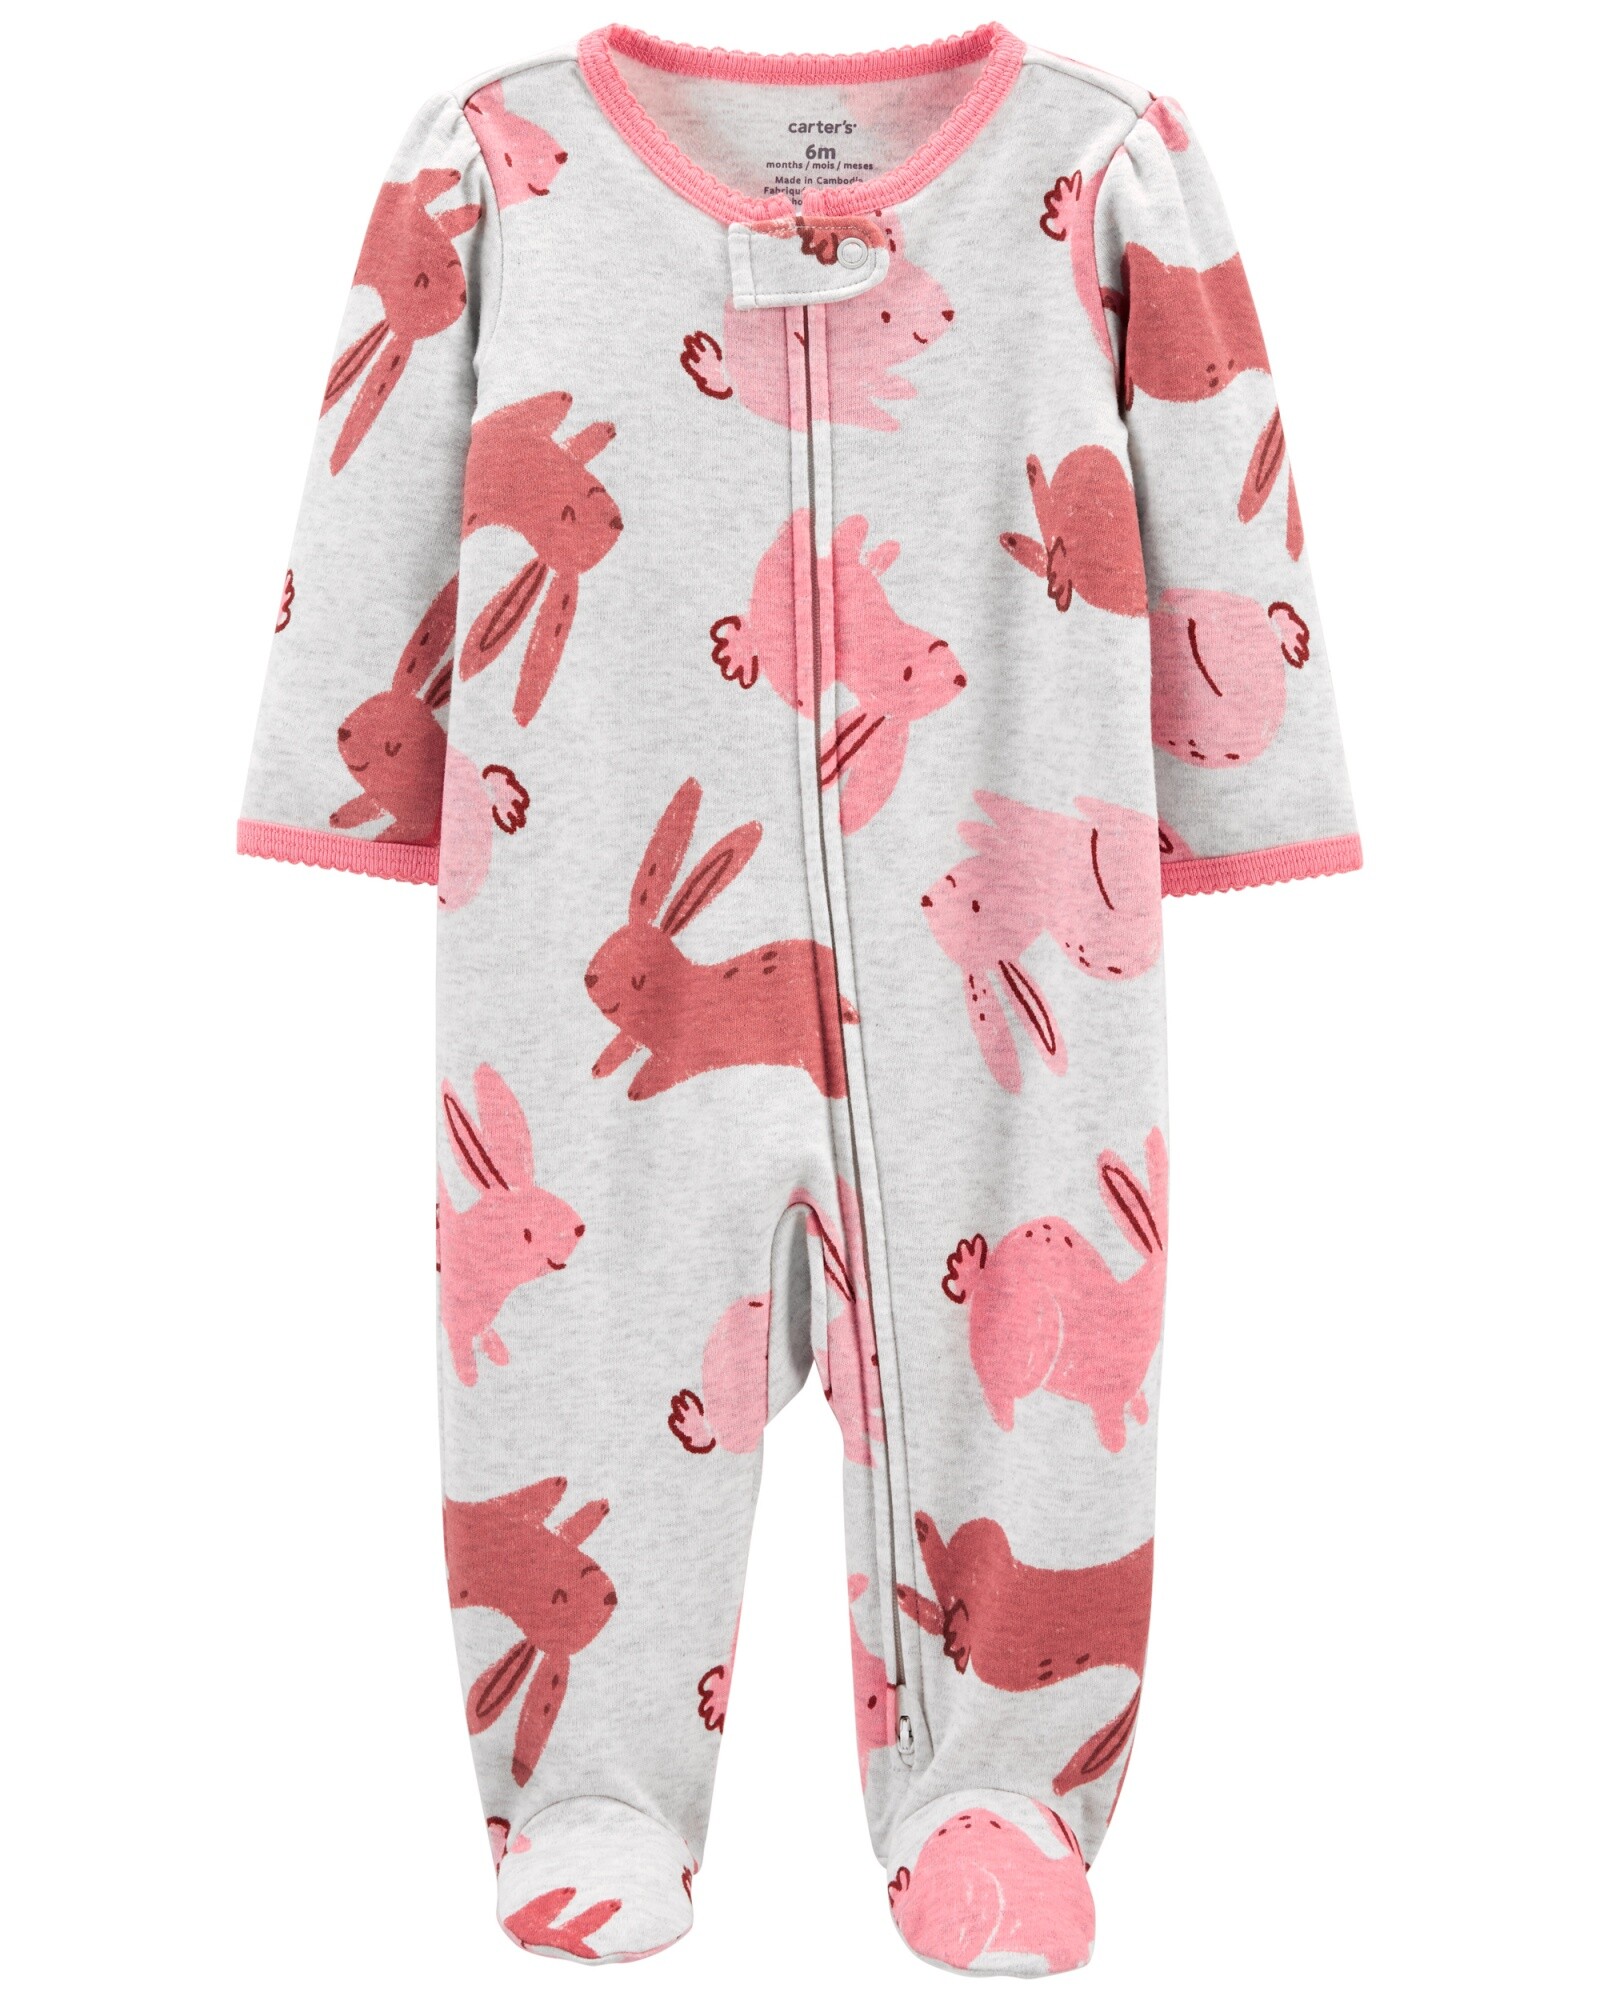 Pijama de algodón conejos para jugar y dormir con cierre de doble sentido 0